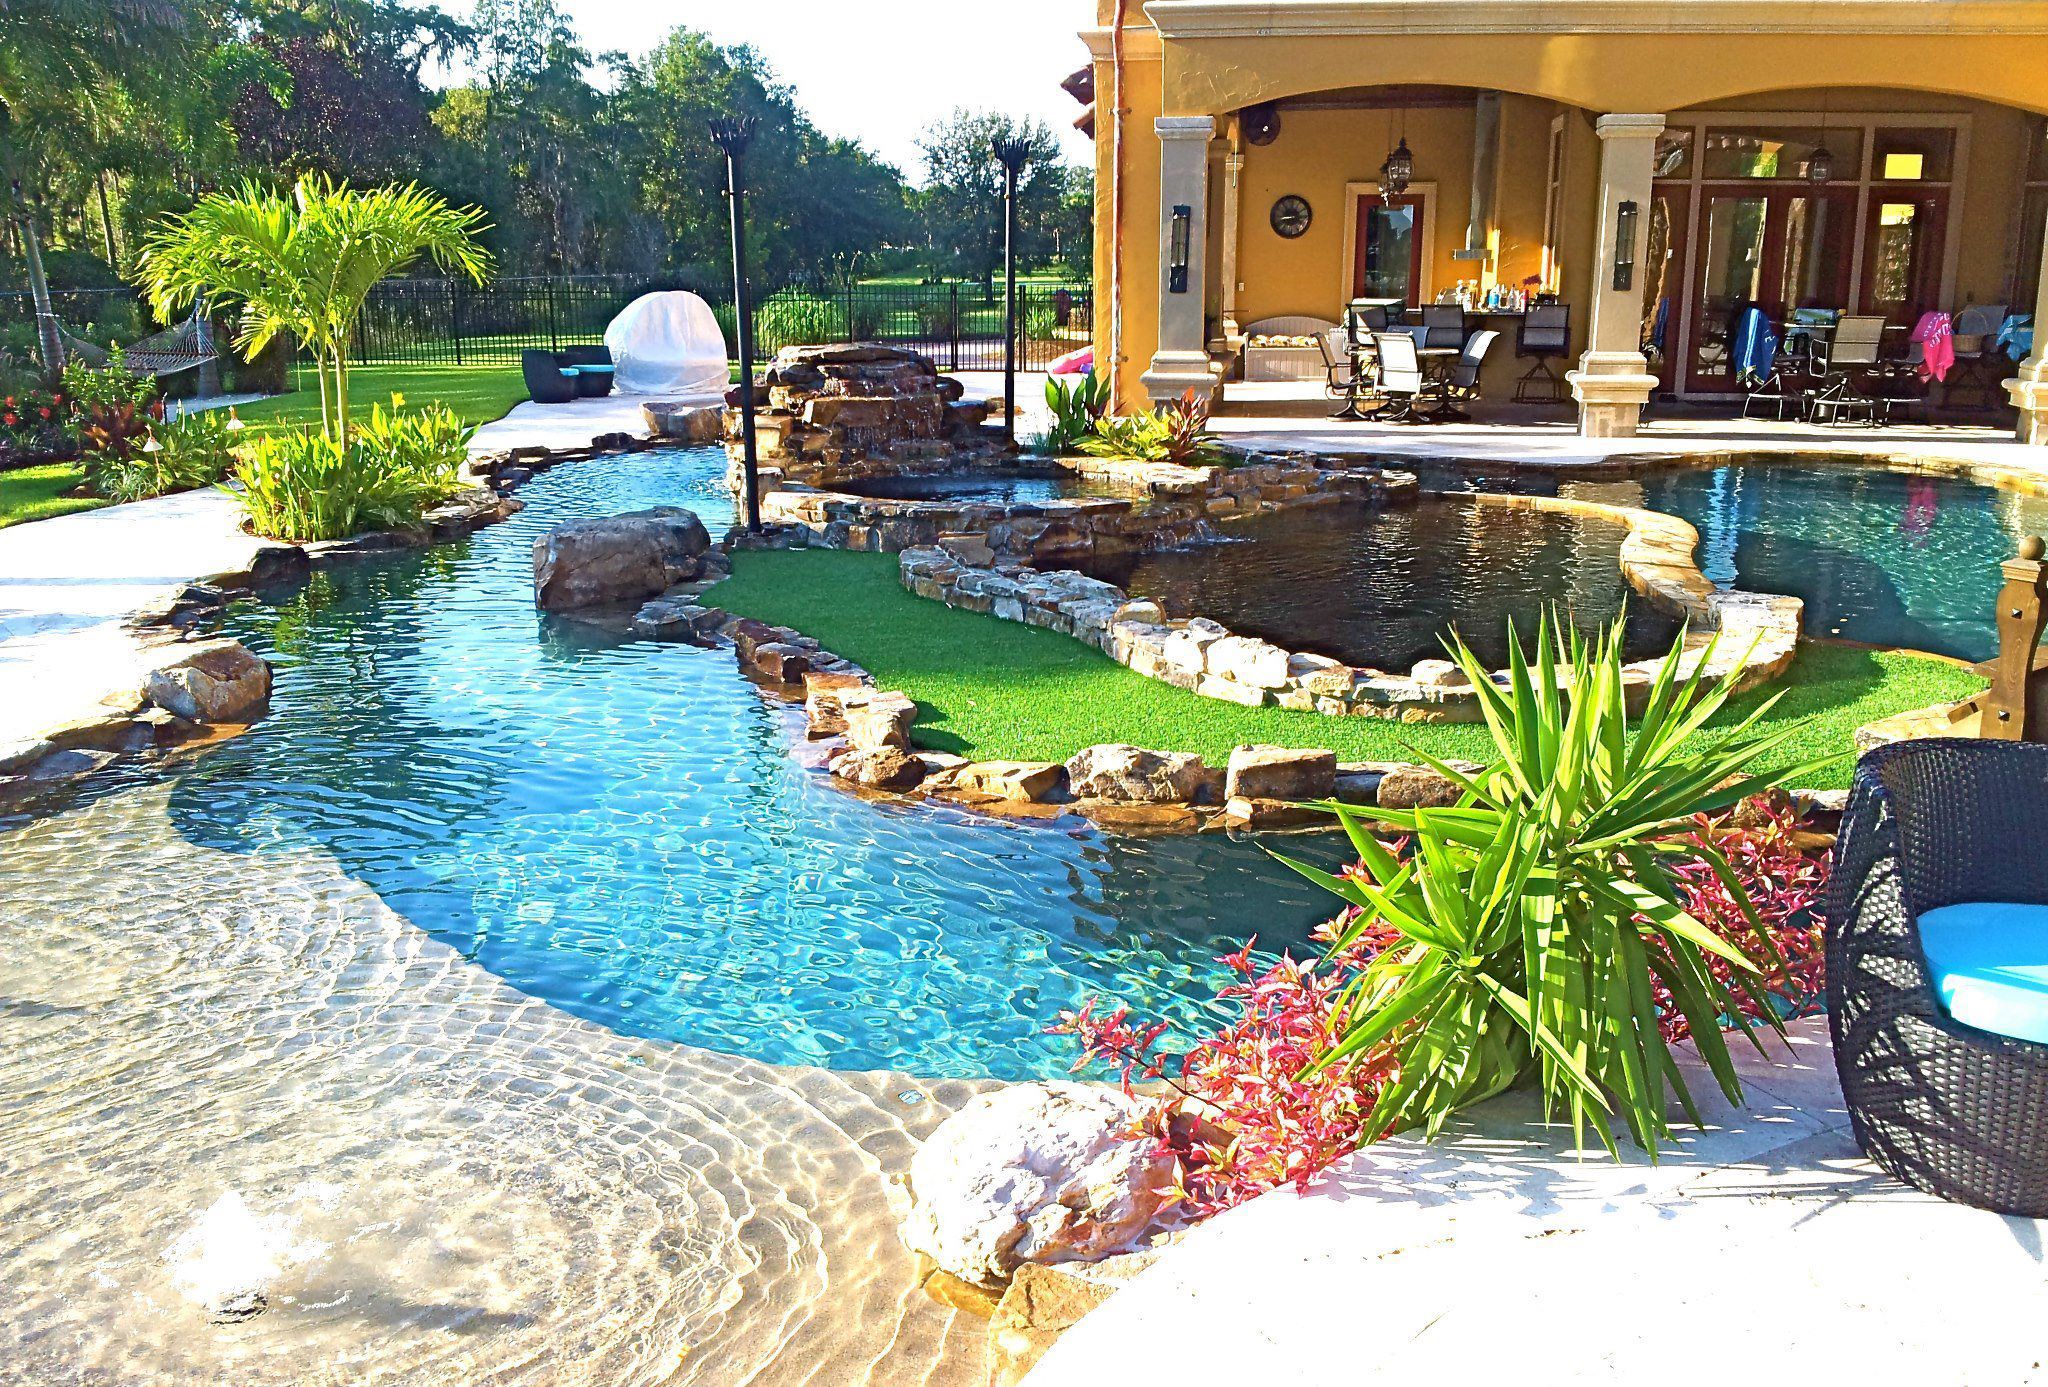 Yakuzi Pool Garten Elegant Backyard Oasis Lazy River Pool with island Lagoon and